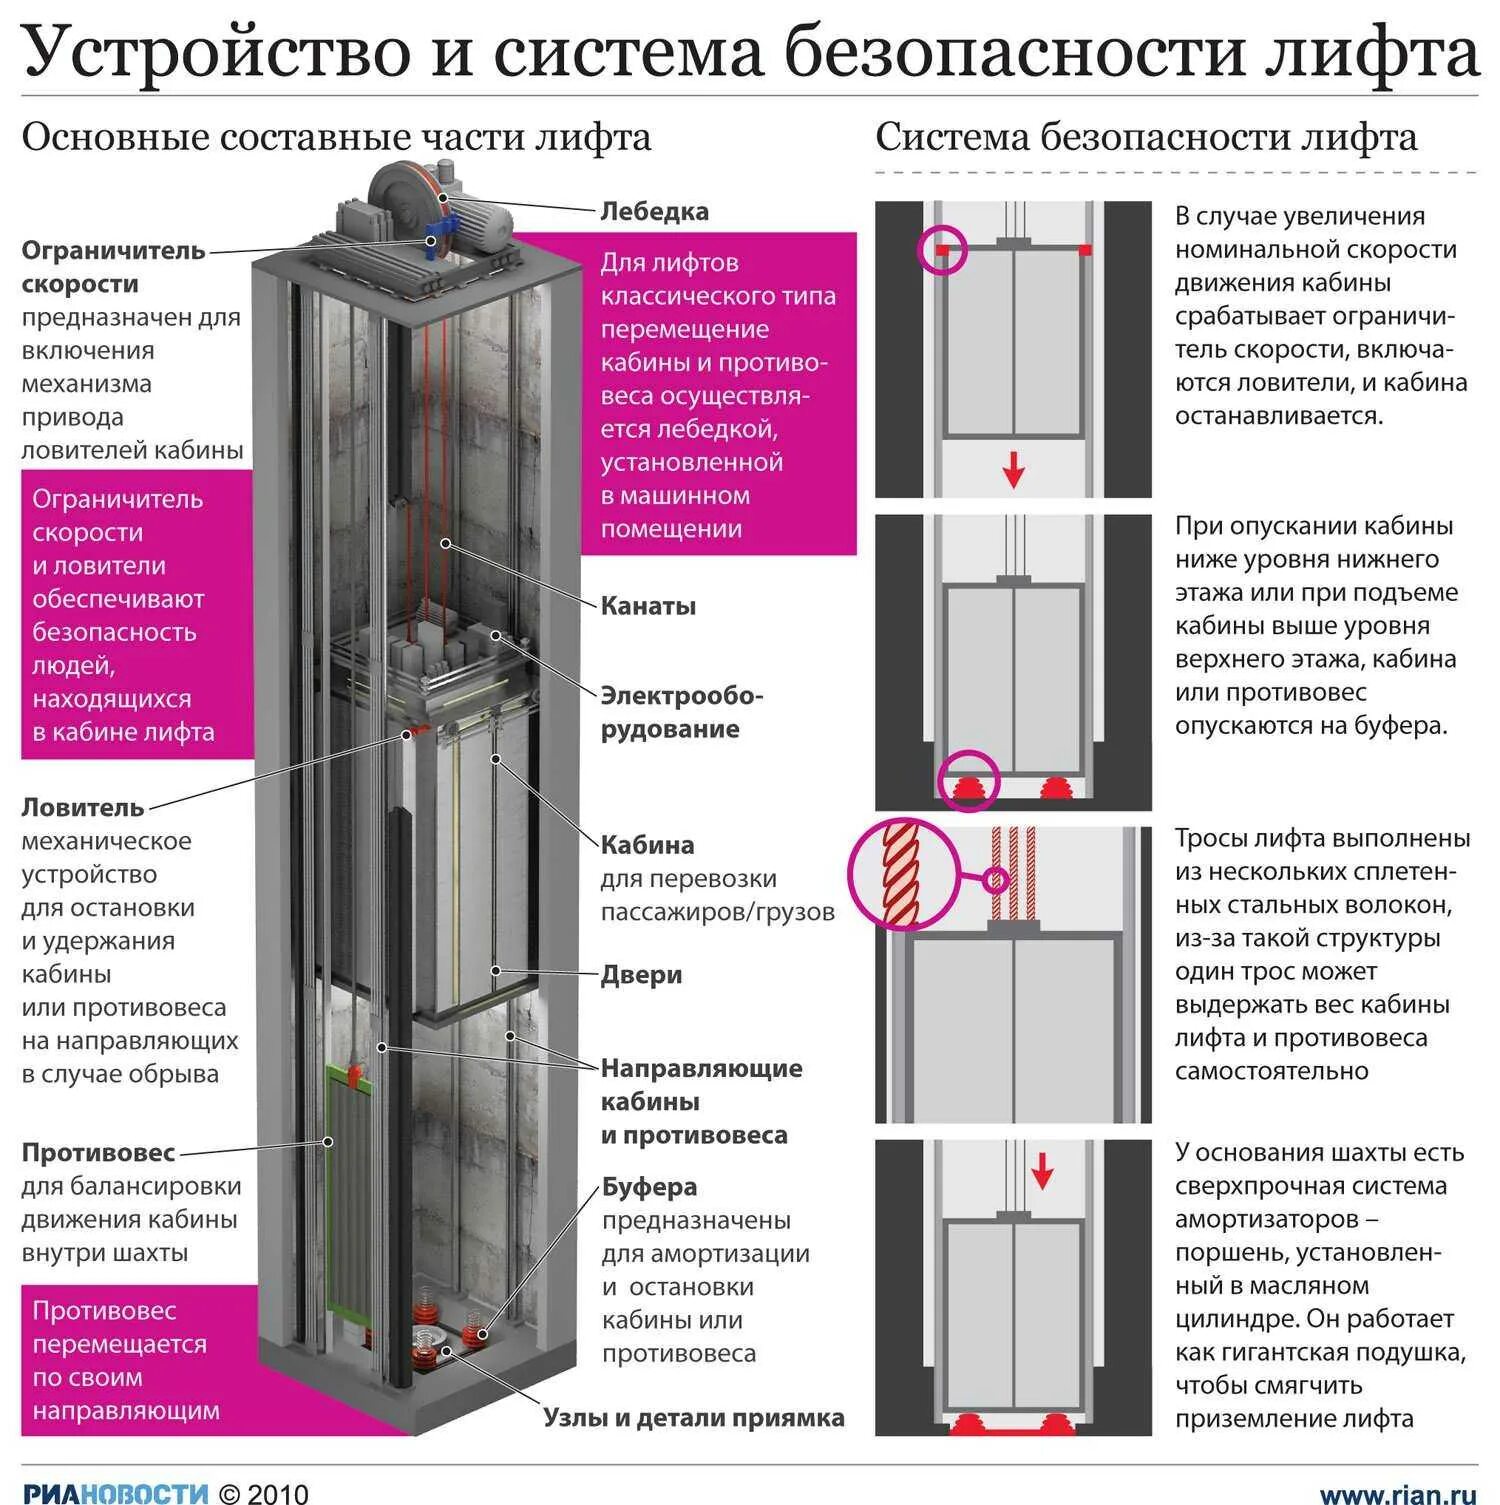 Какая мощность лифта. Устройства безопасности лифта лифта. Электрические устройства безопасности лифта. Лифт пассажирский как устроен. Схема Шахты лифта в многоквартирном доме.